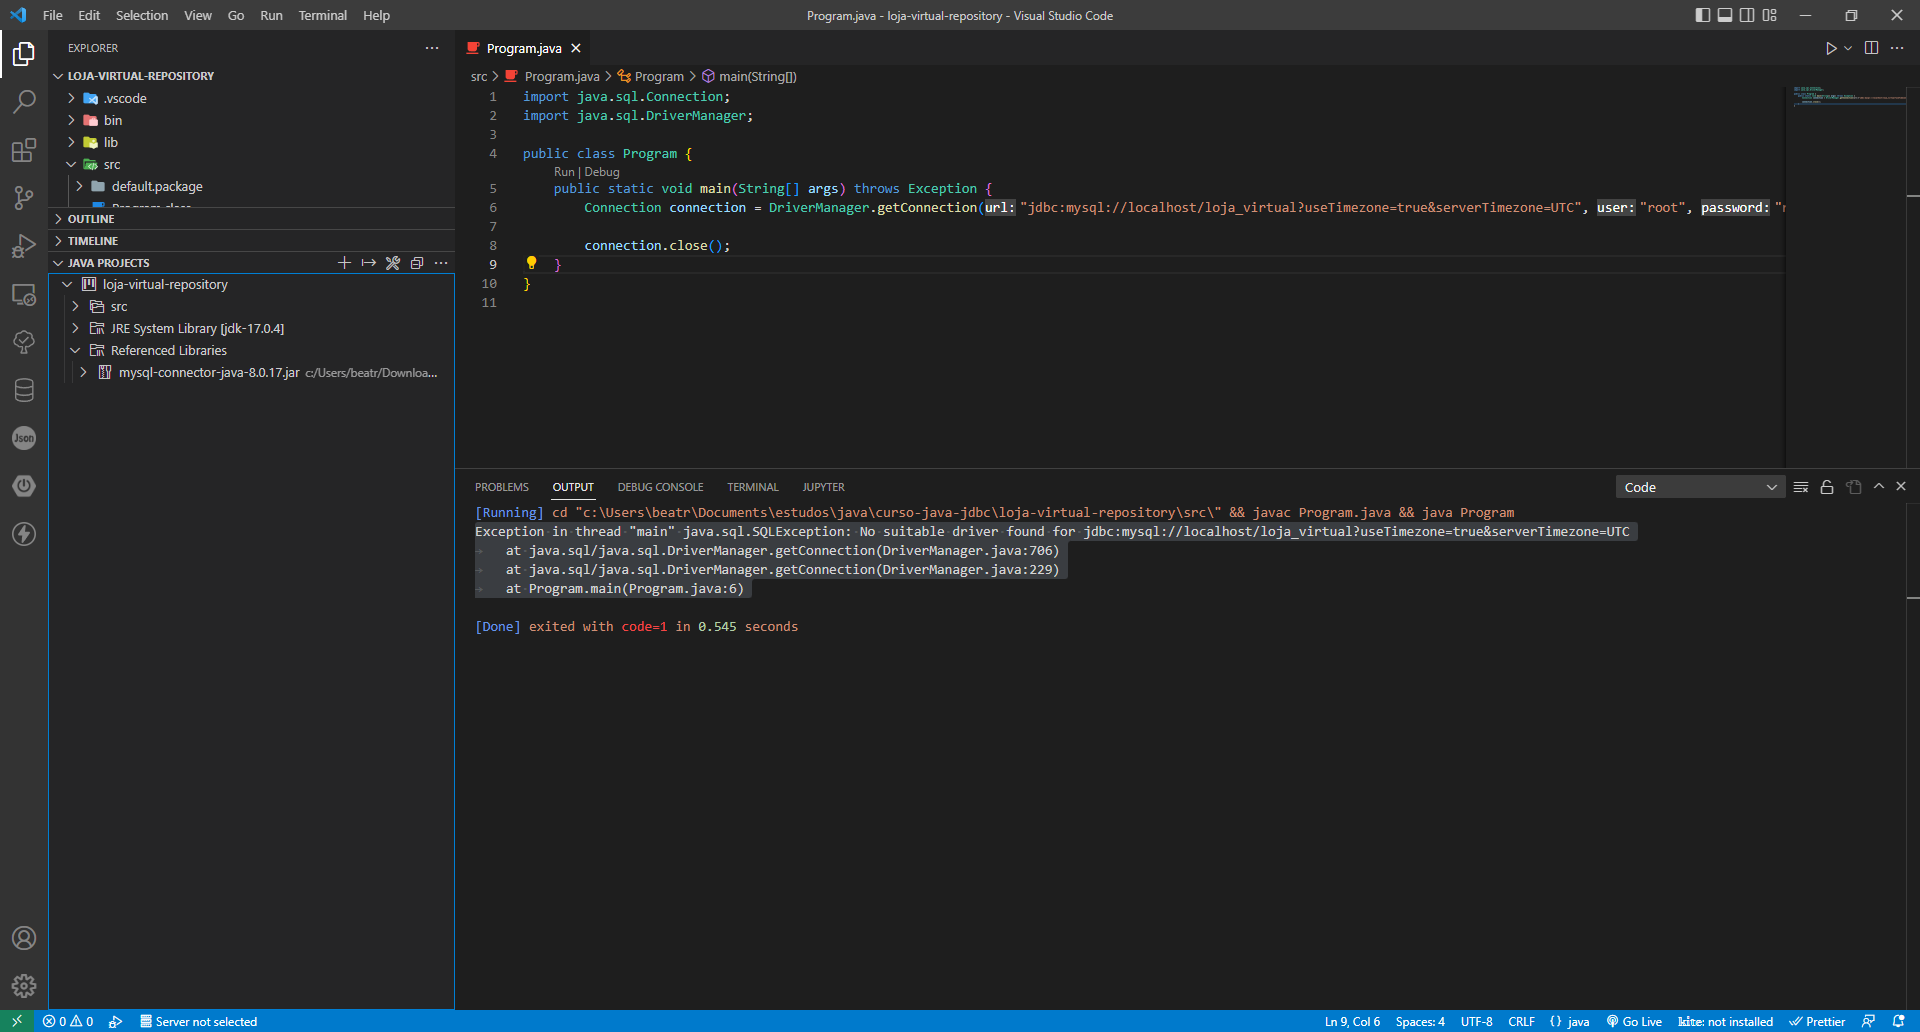 Tela do editor de código Visual Studio Code mostrando a estrutura do projeto Java junto ao código da aplicação e erro.